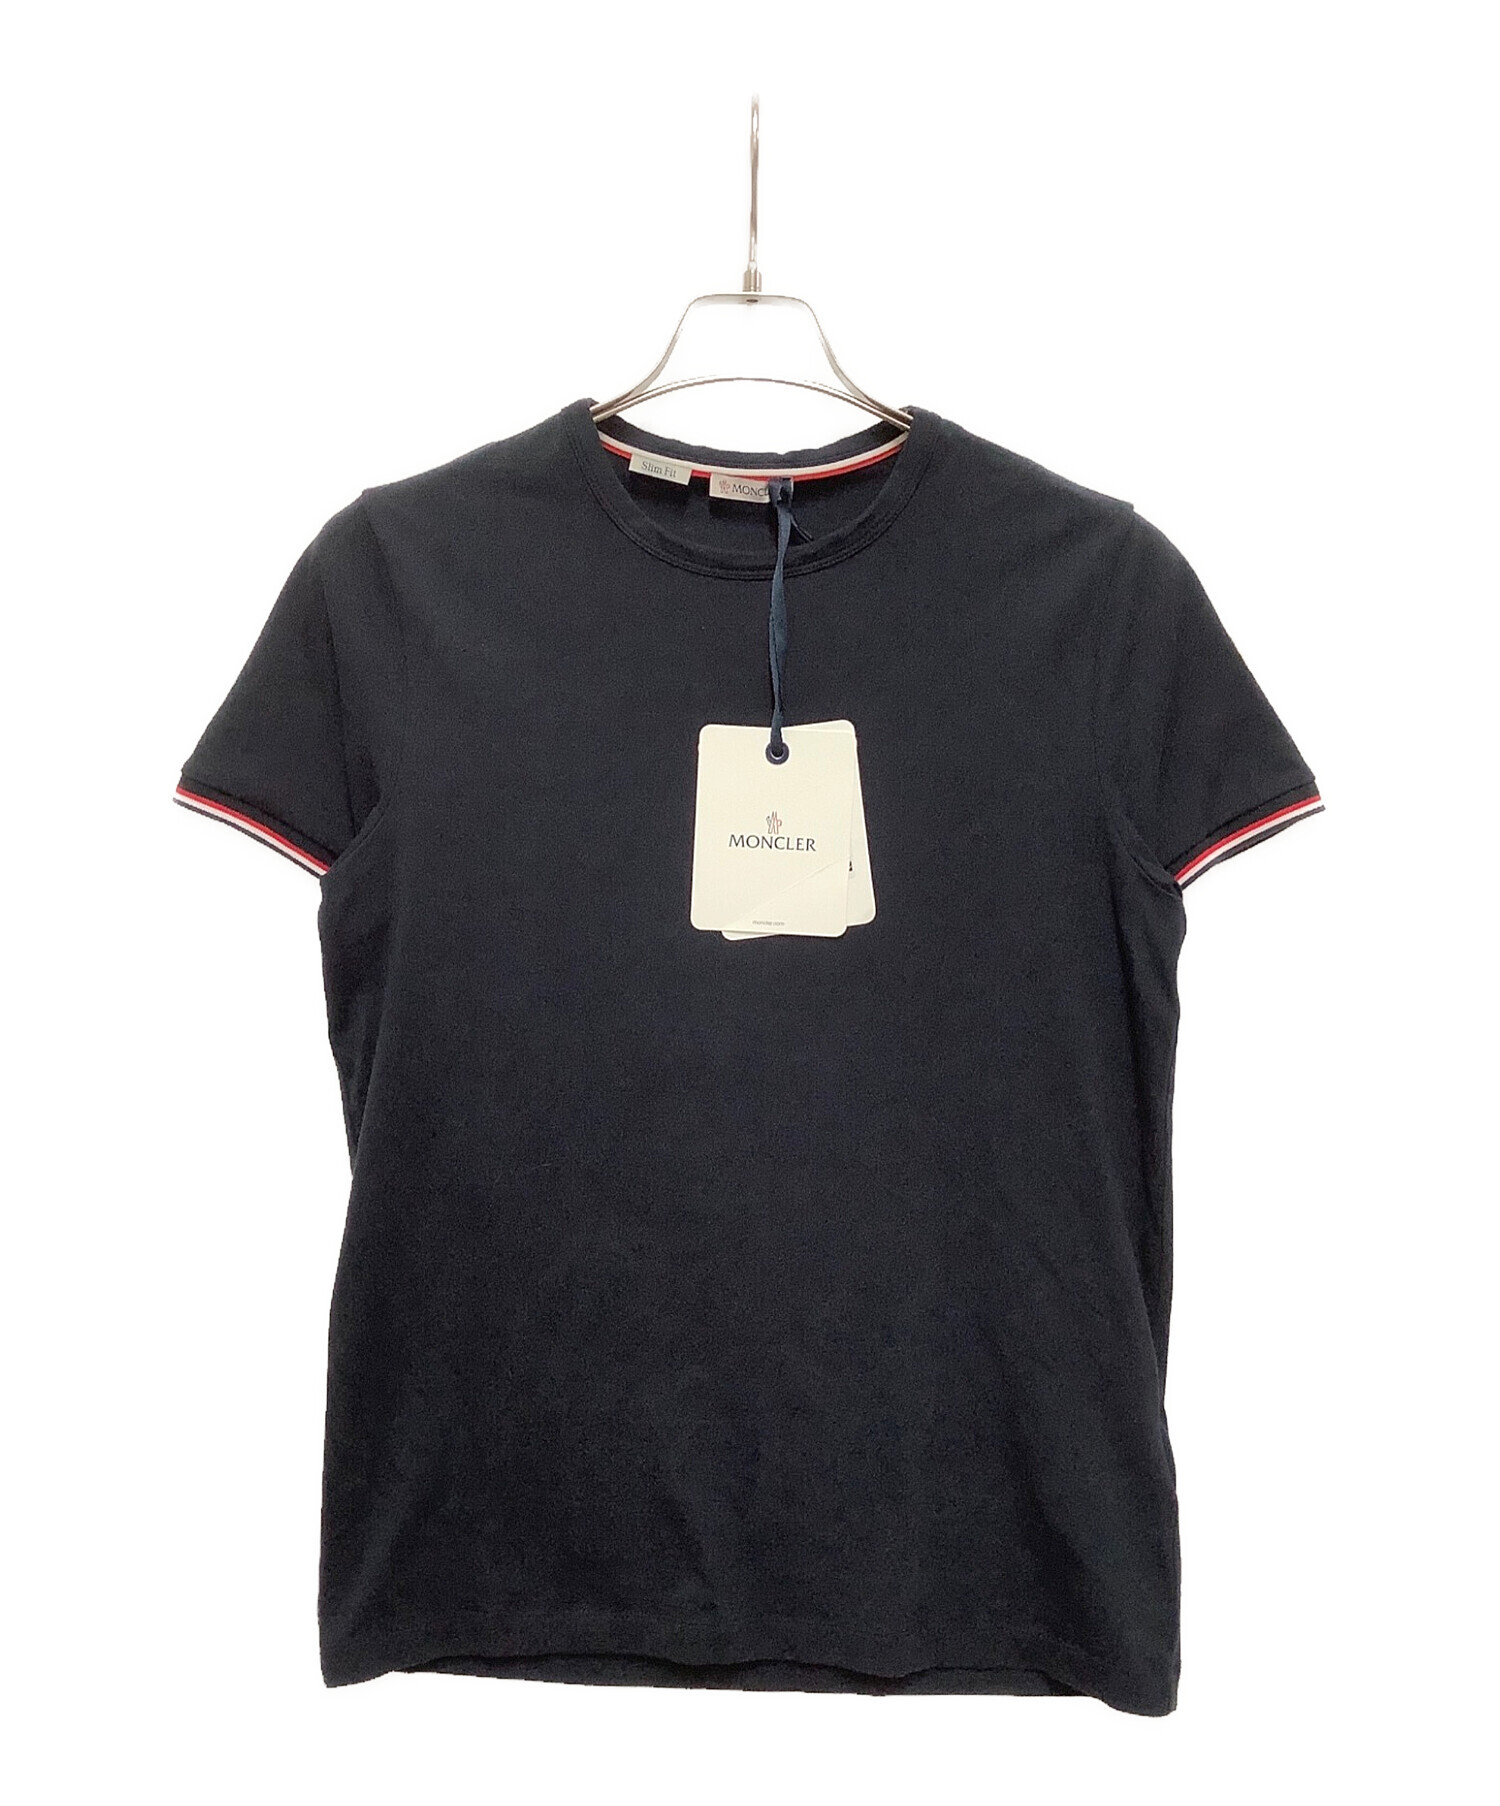 MONCLER (モンクレール) Tシャツ ネイビー サイズ:SIZE S